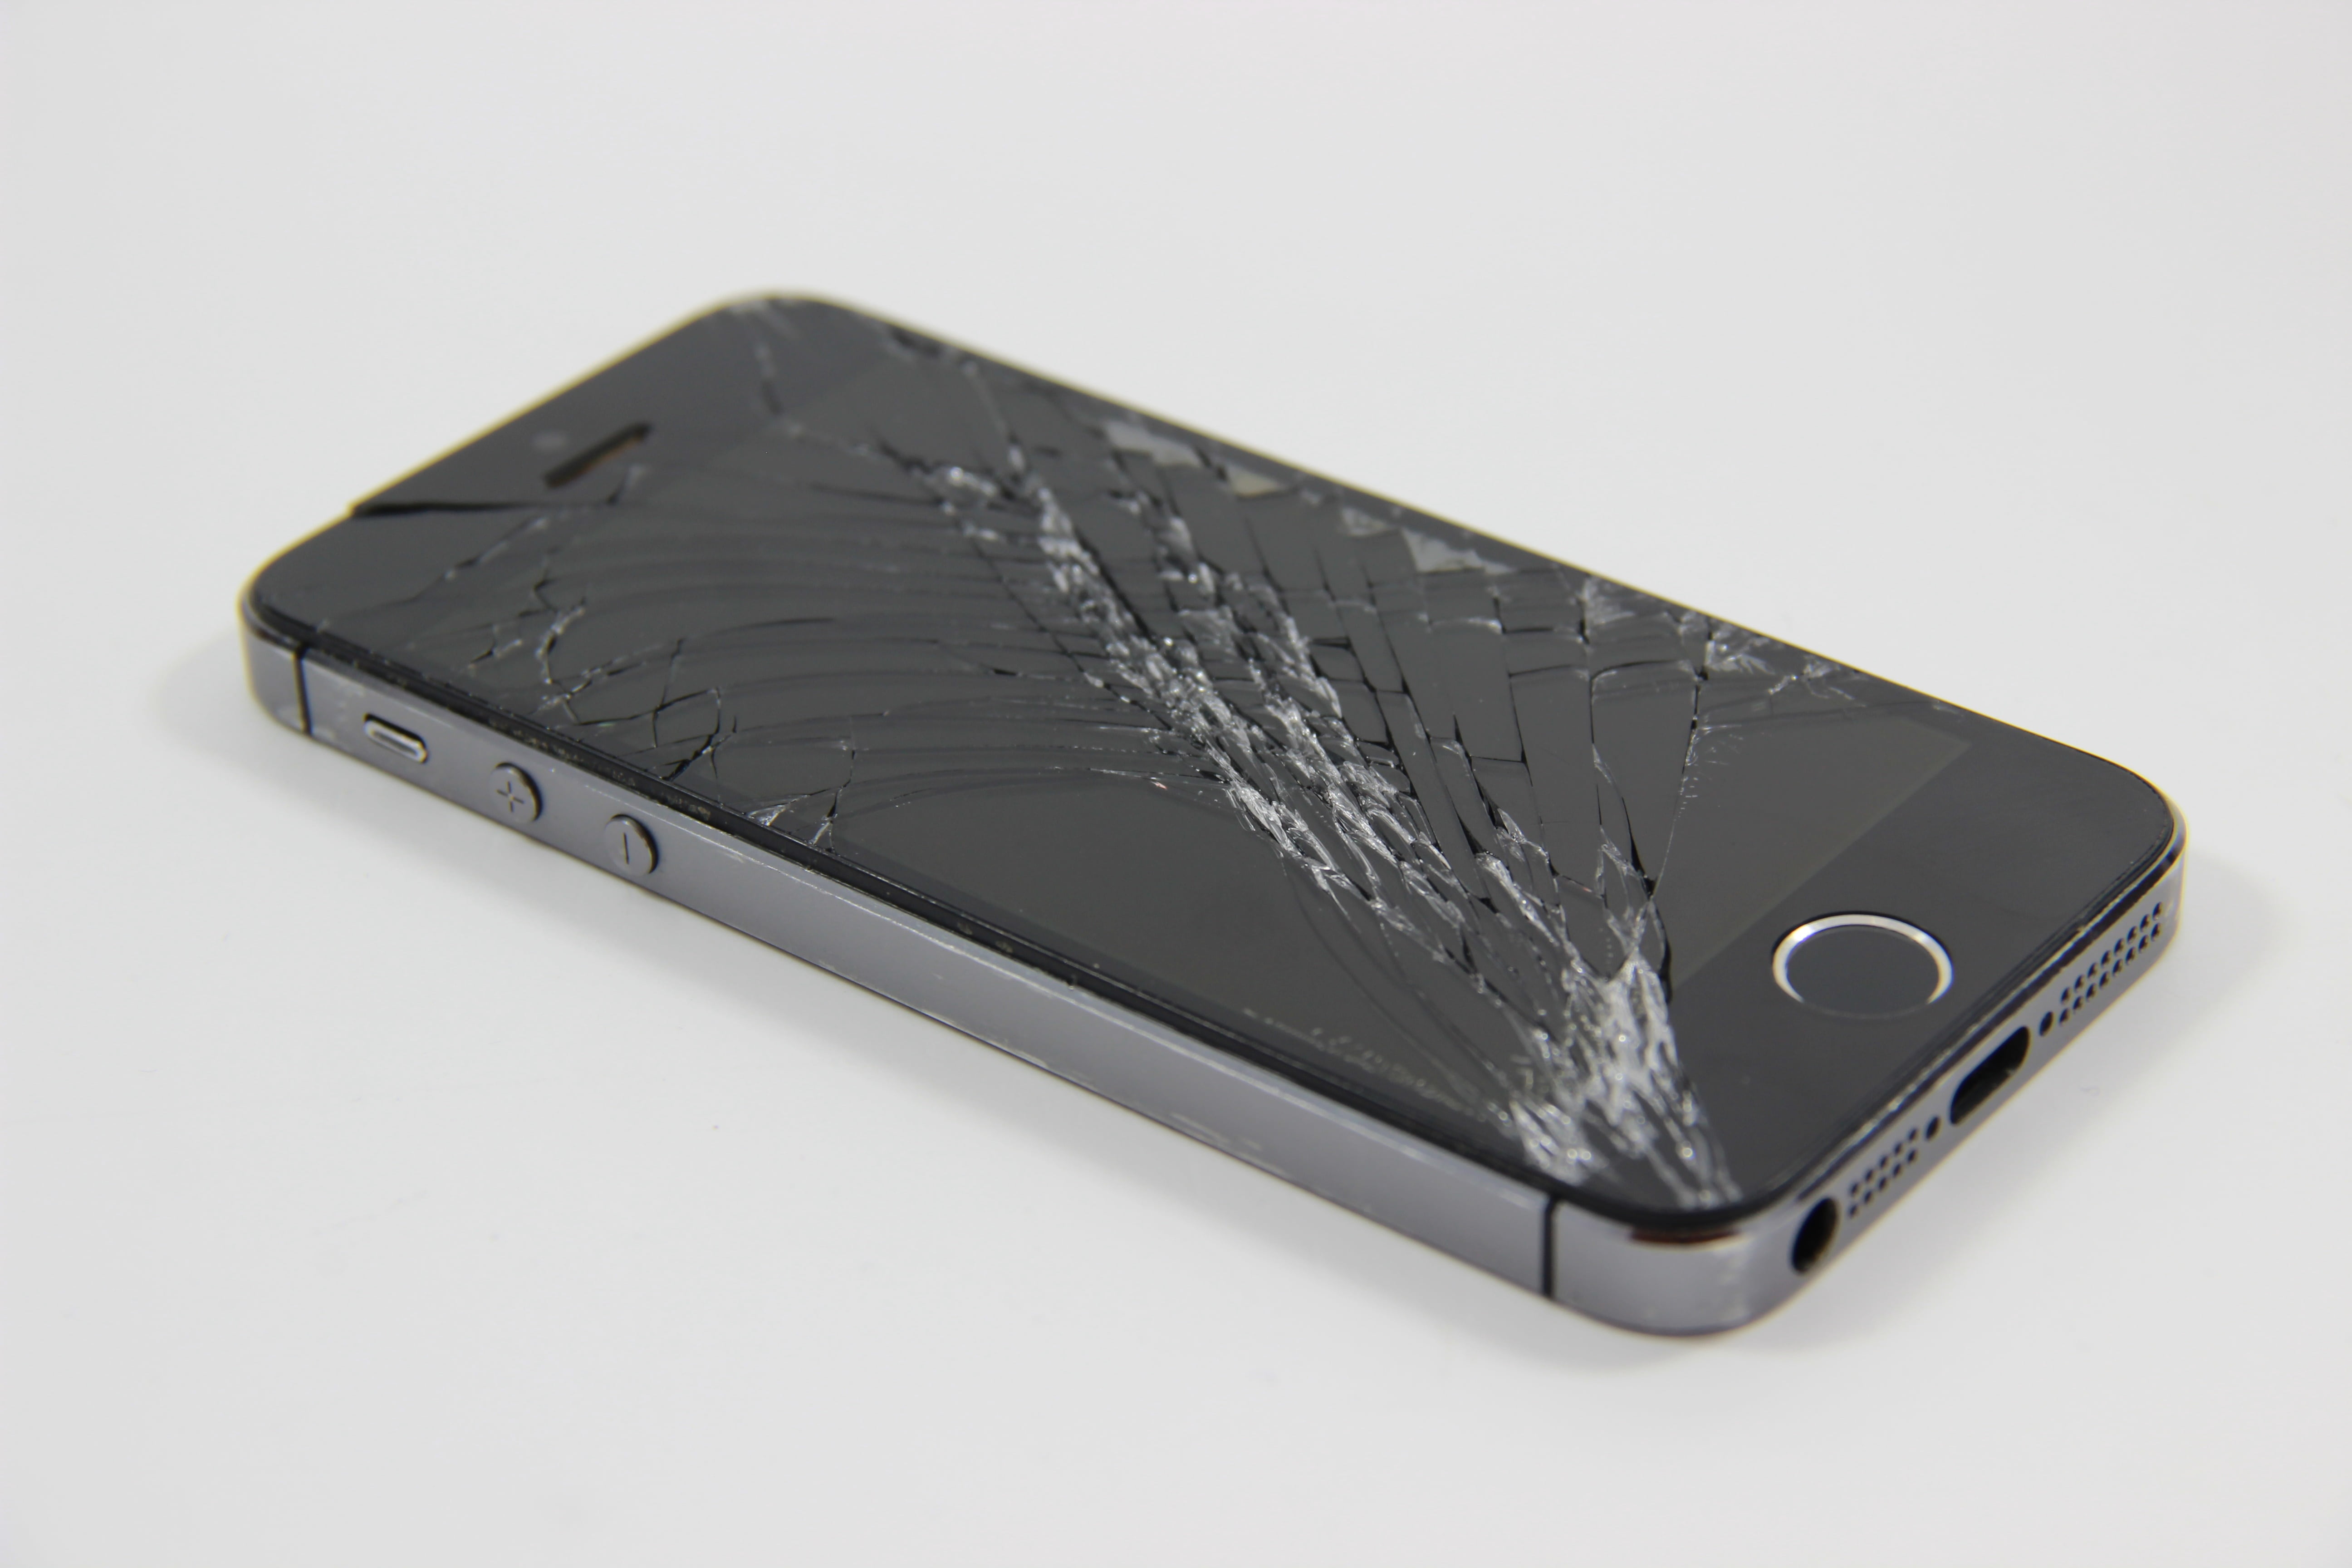 space gray iPhone 5s, broken display, broken iphone, mobile, screen